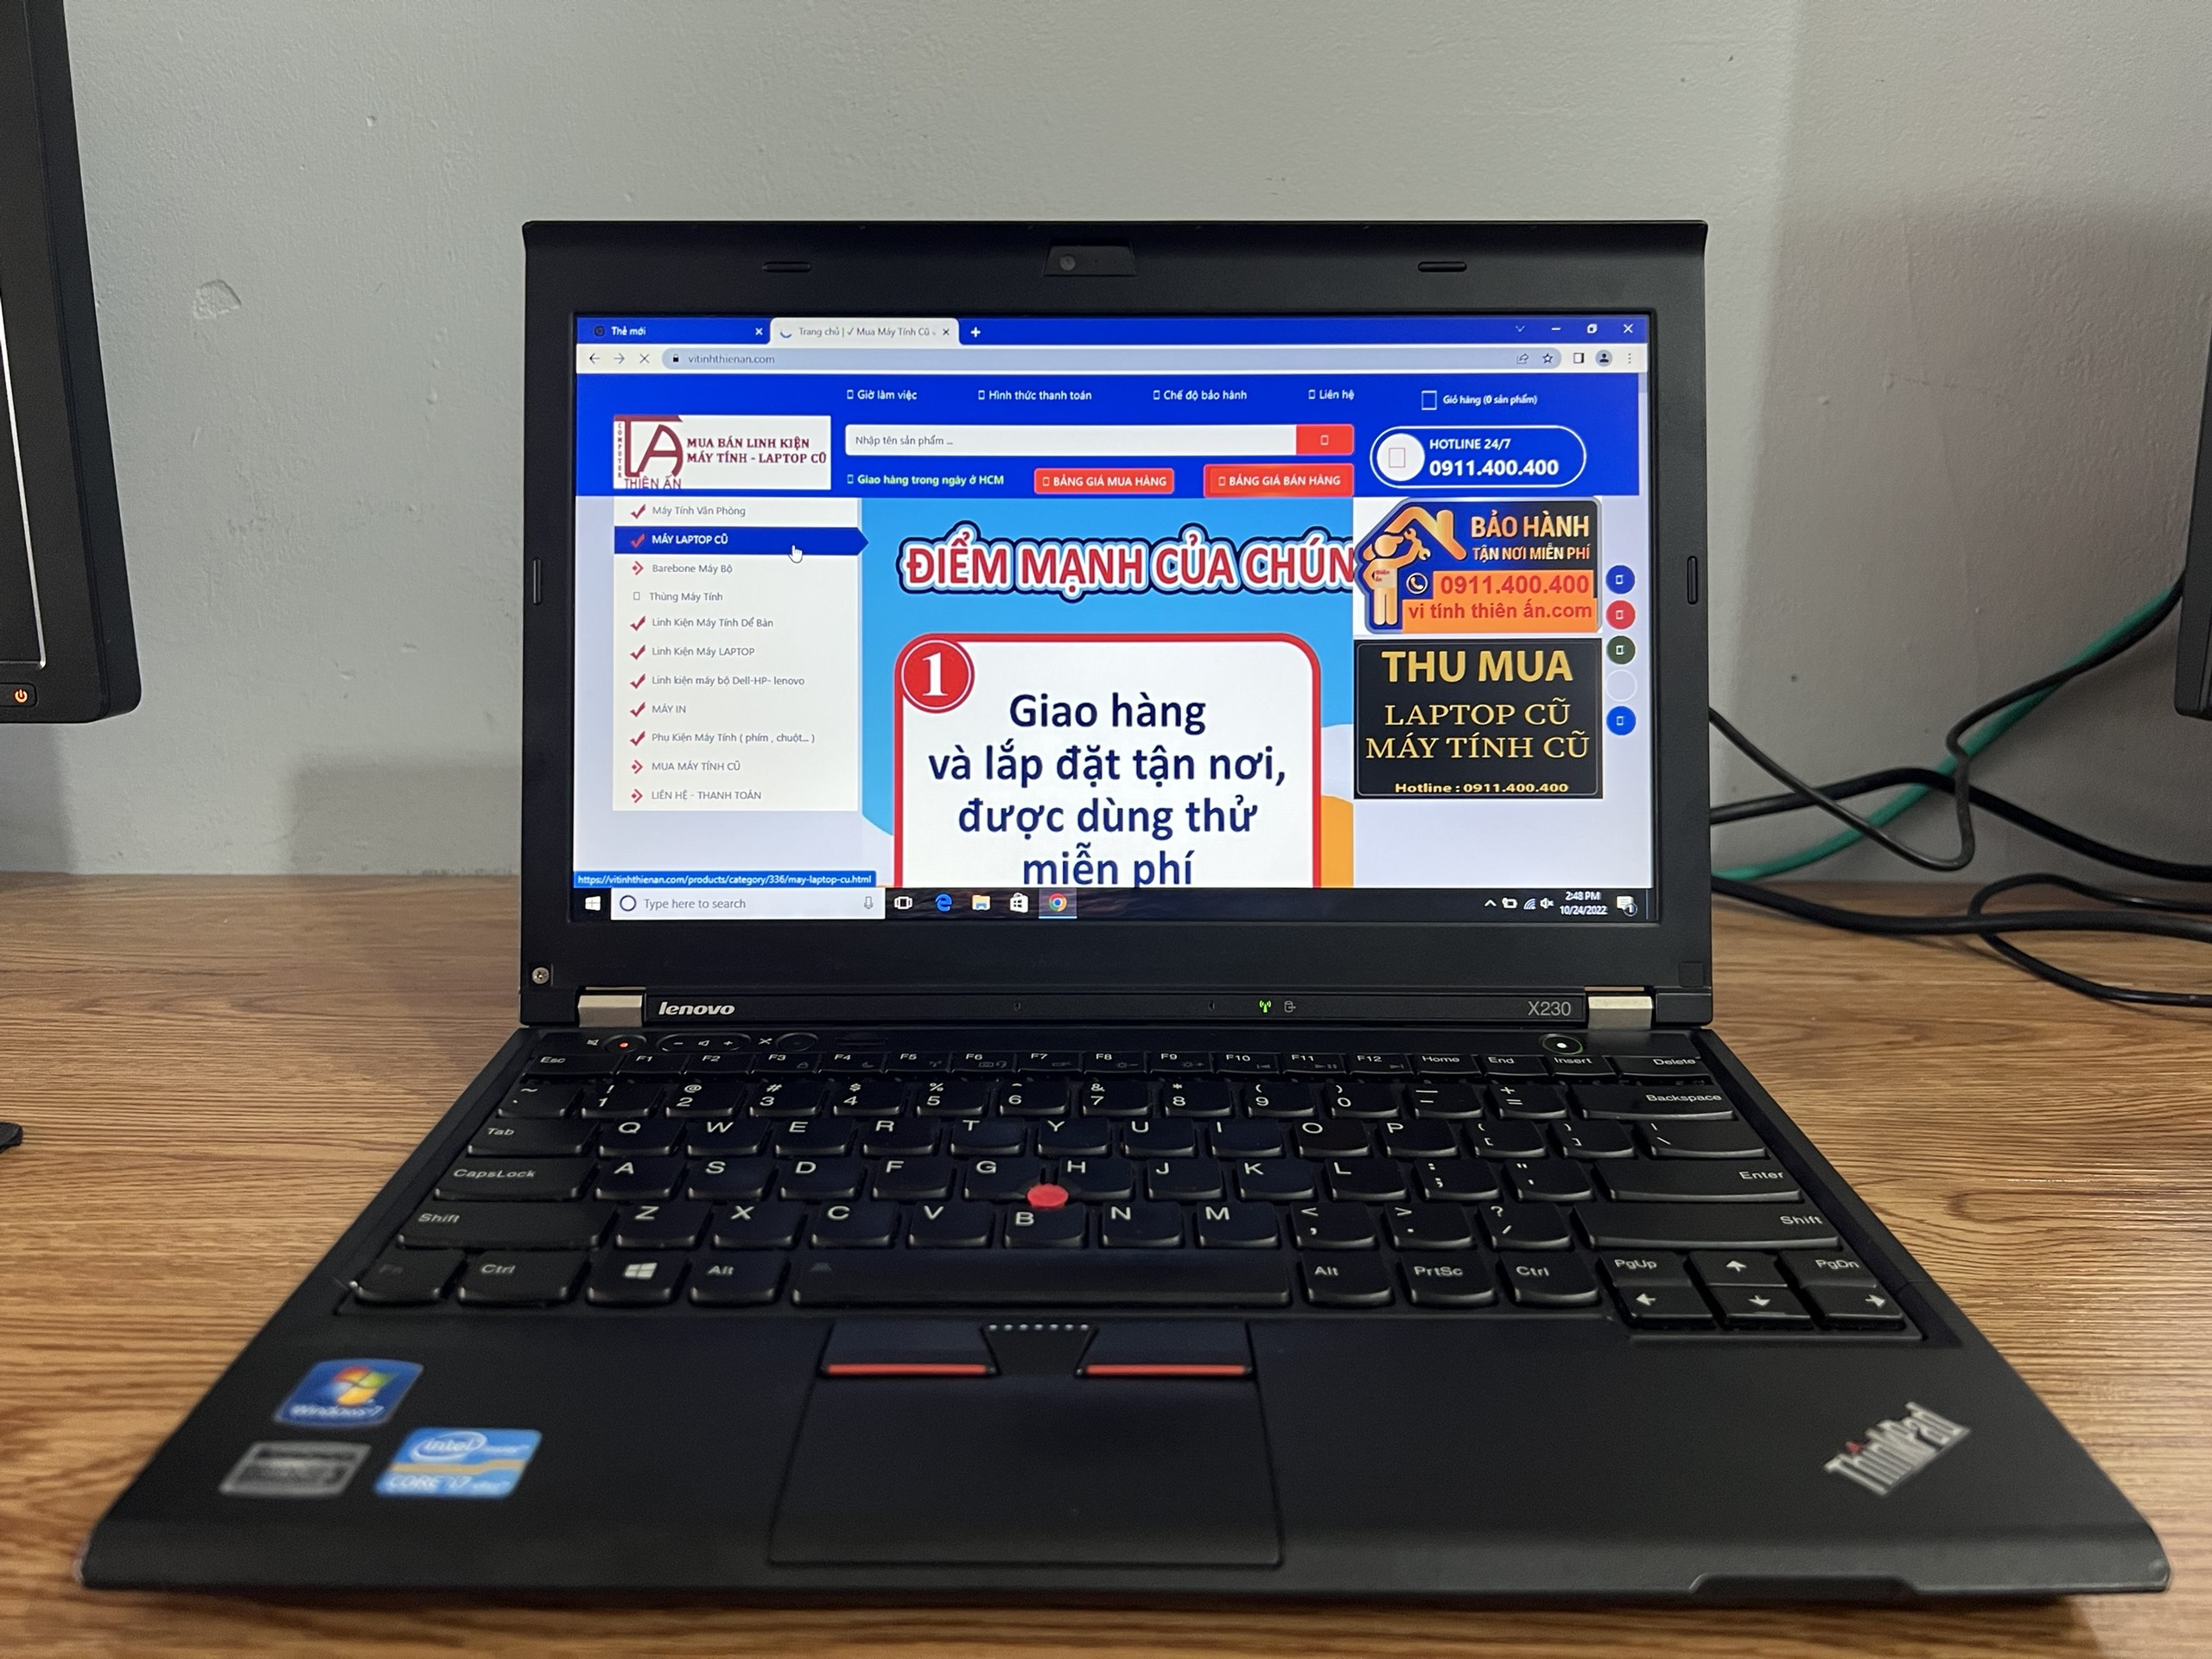 Laptop Samsung i5 thế hệ 6 phù hợp văn phòng , chơi game 